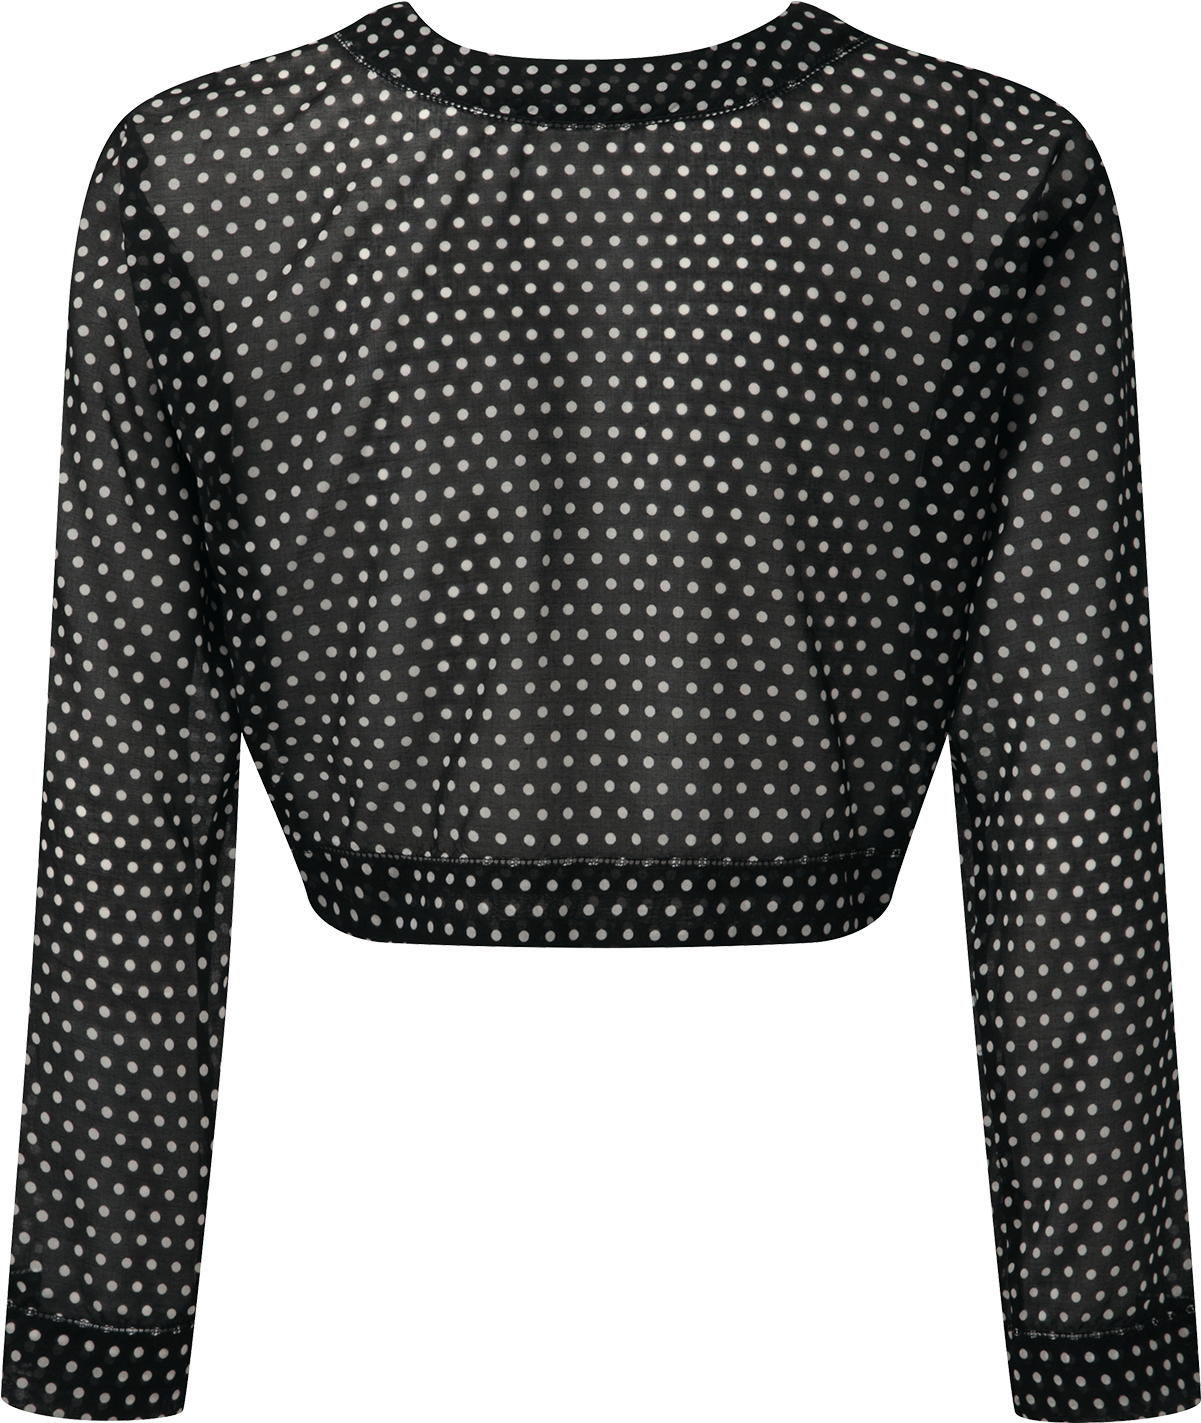 Black Polka Dot Cotton Tie Blouse - Polka Dot (1200x1740), Png Download